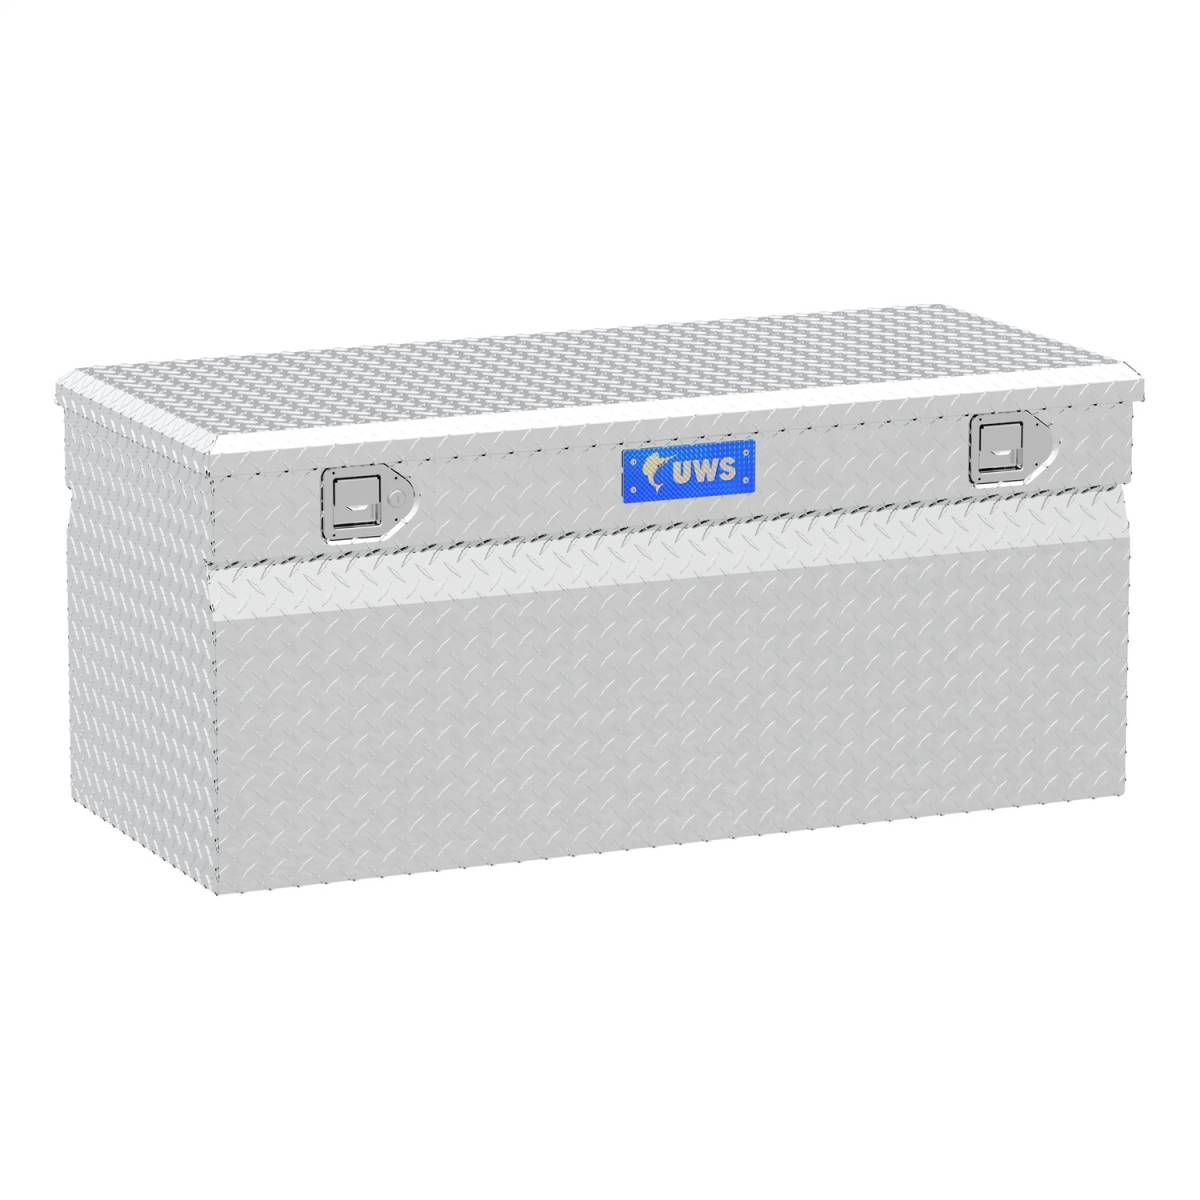 UWS EC20252 - 48 Aluminum Chest Box